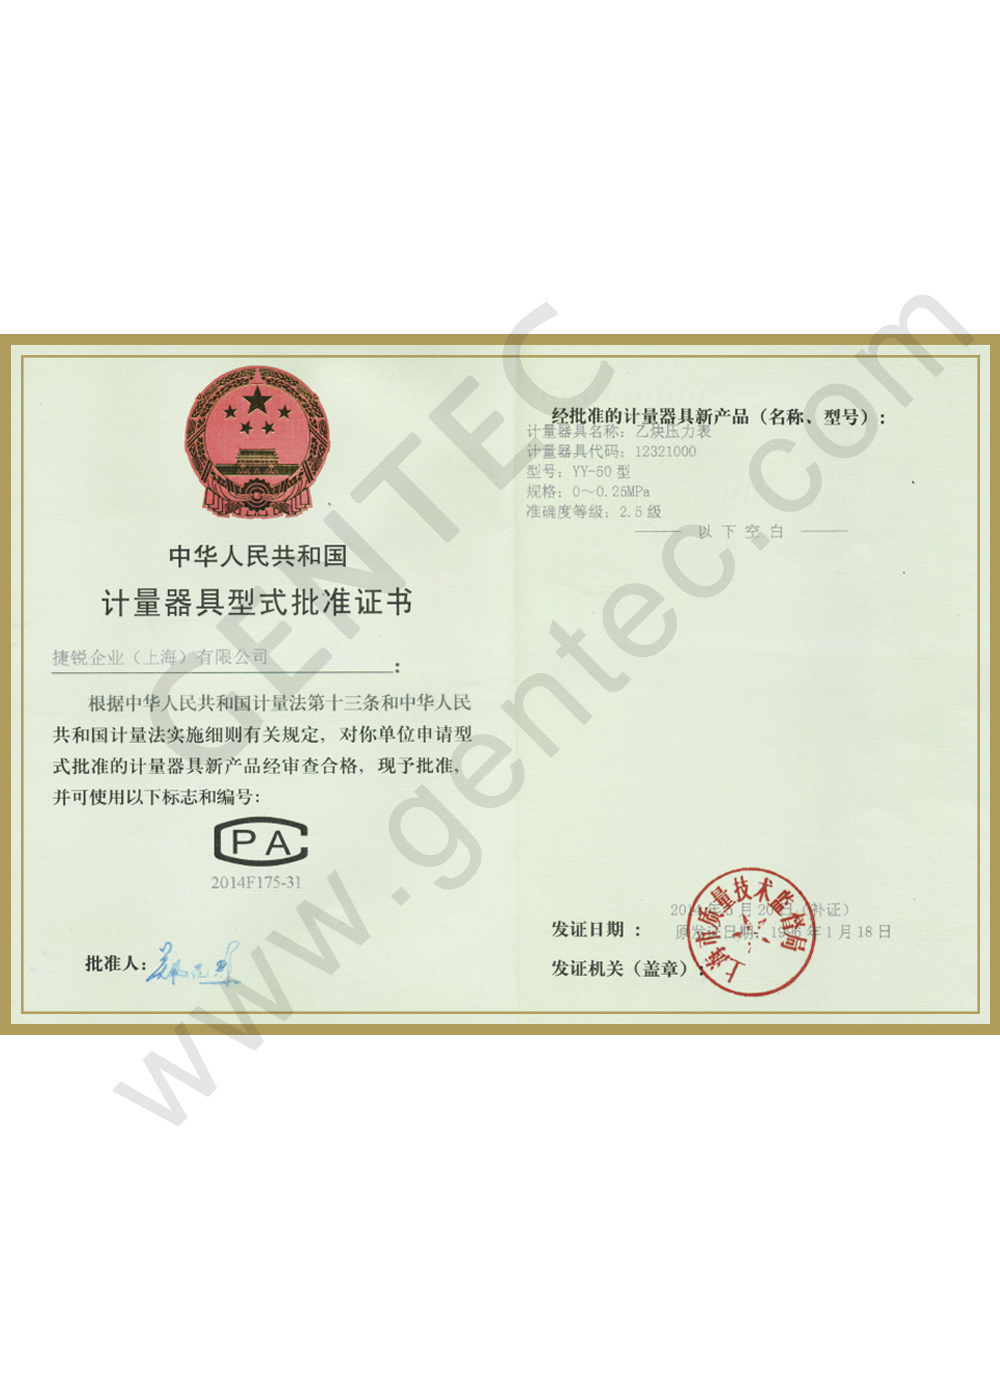 Approval Certificate (YY-50）